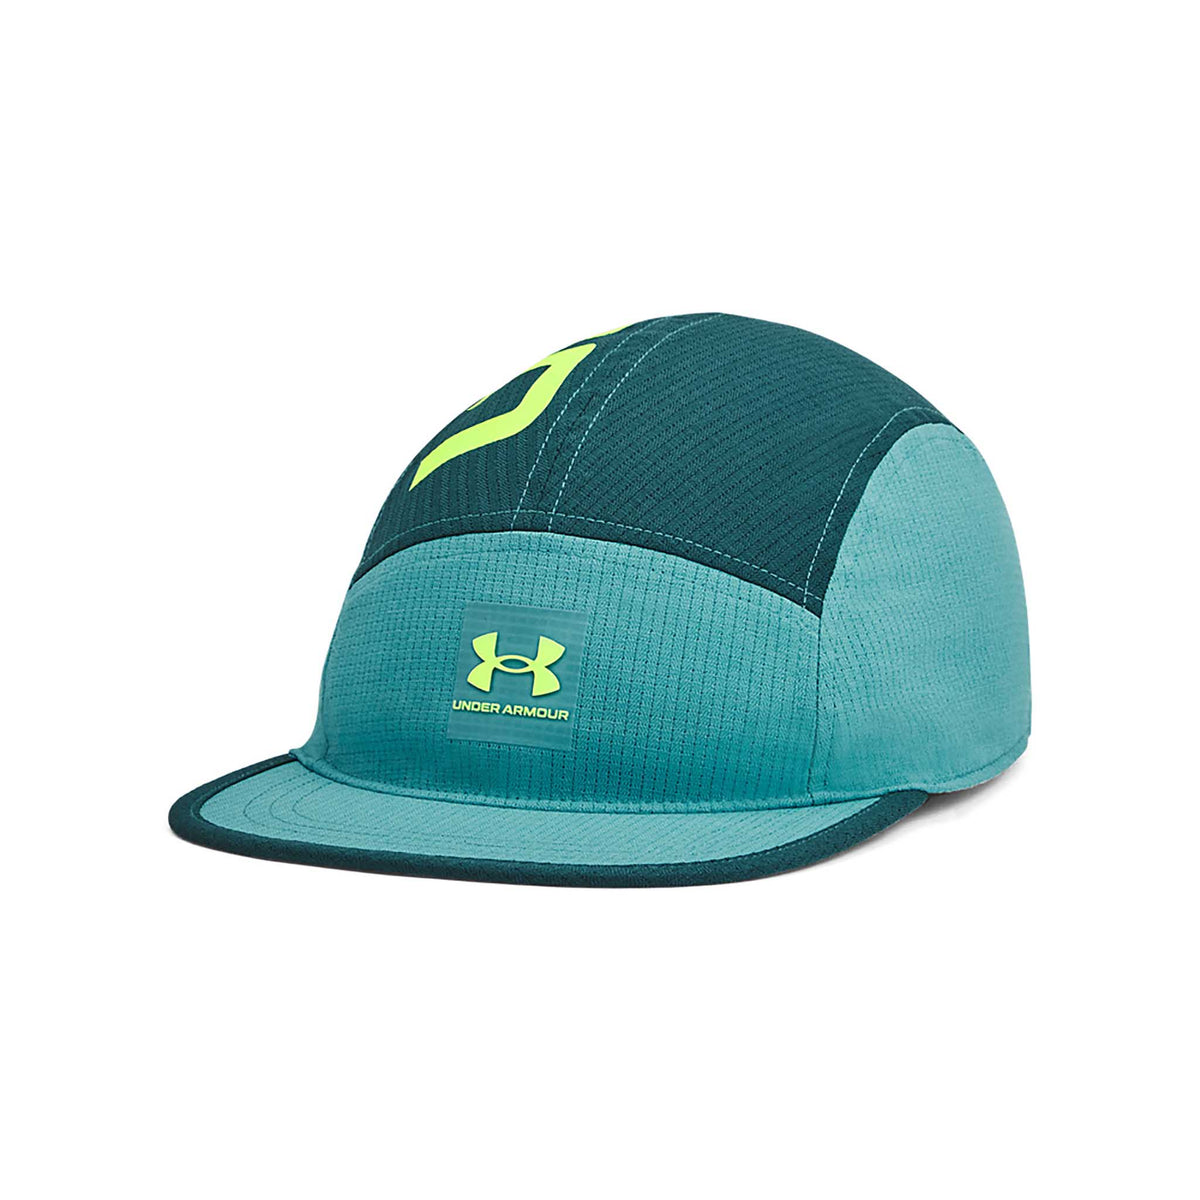 UA ArmourVent camper hat for men – Soccer Sport Fitness